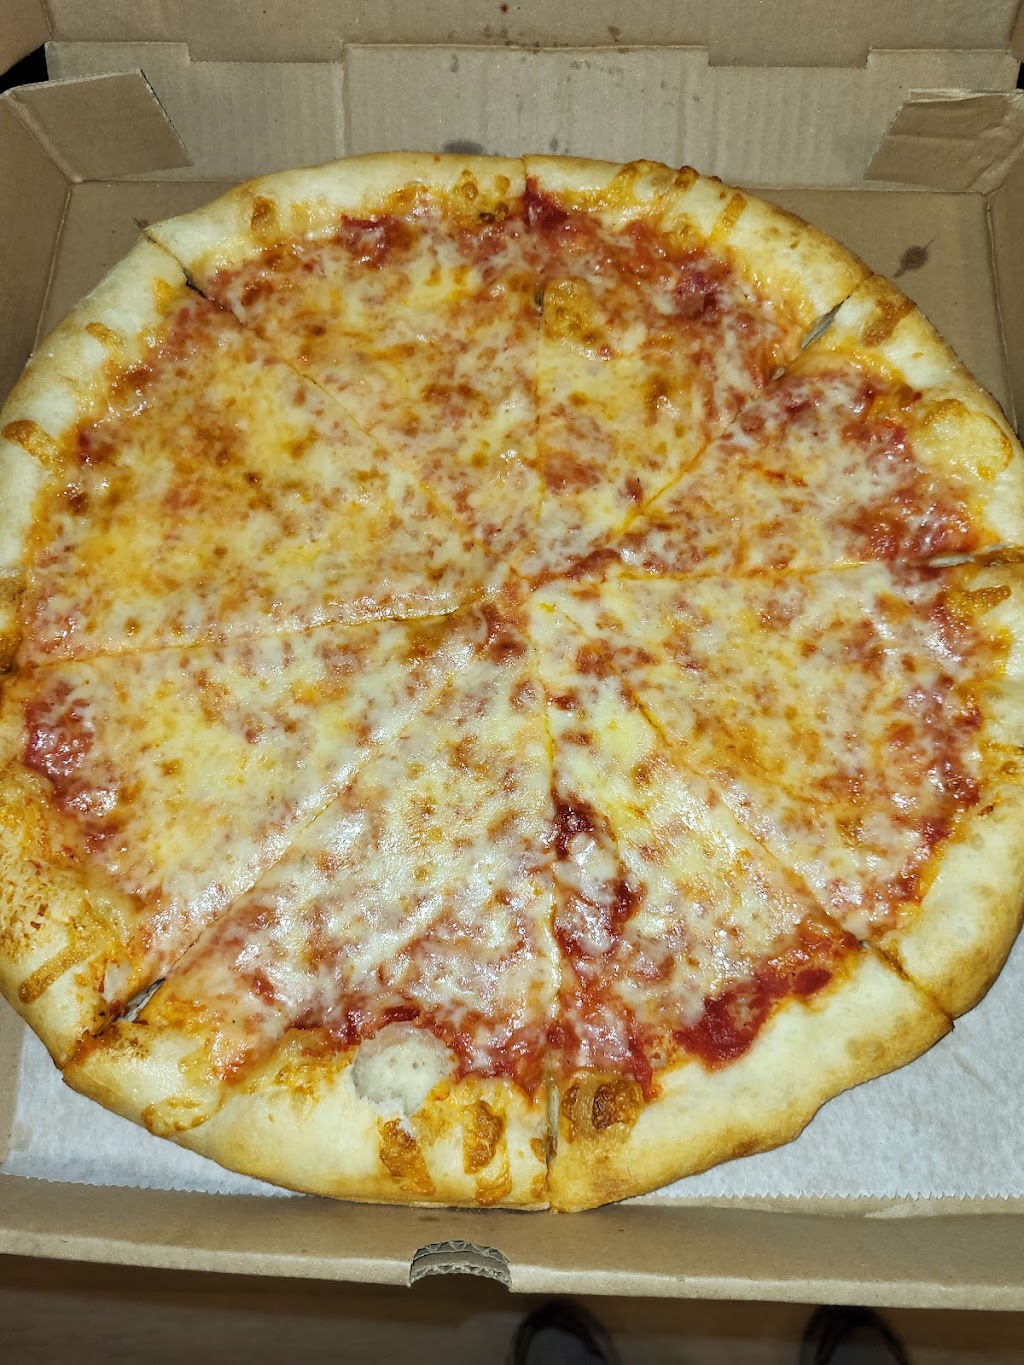 Sicilia Pizza Pizza | 558 S Delsea Dr, Clayton, NJ 08312 | Phone: (856) 881-9566